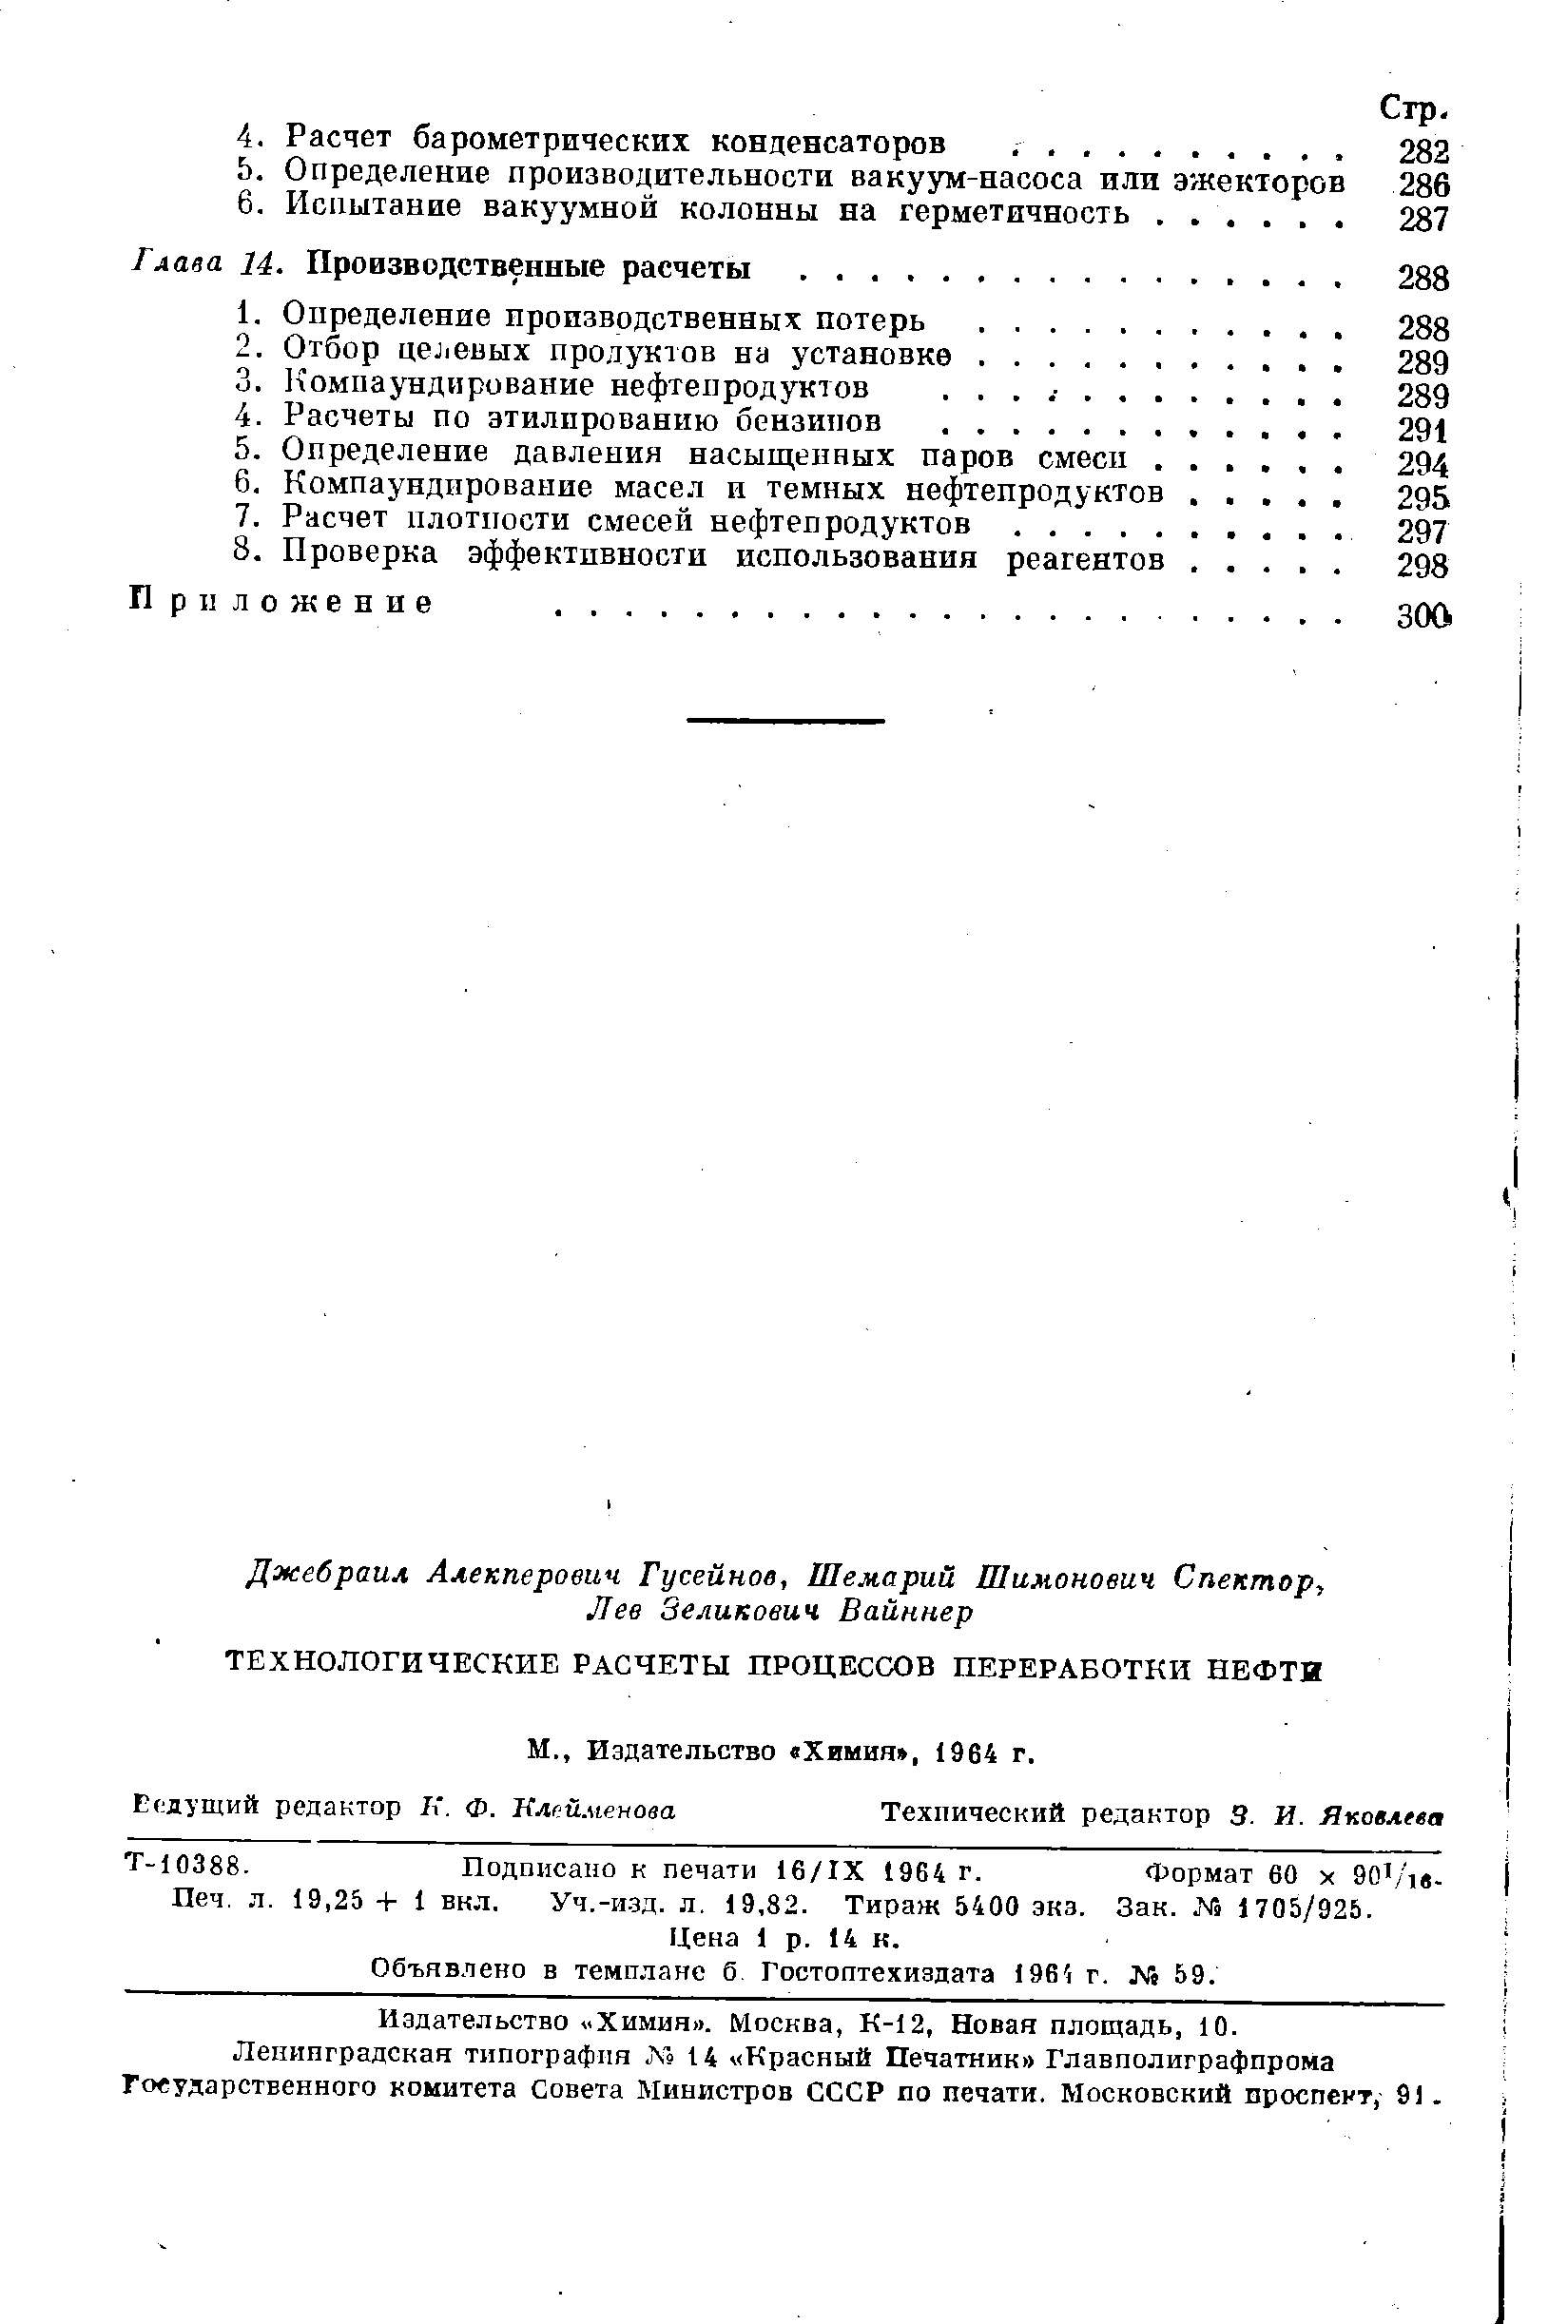 Т-10388. Подписано к печати 16/1Х 1964 г. Формат 60 х ЭО Ав.